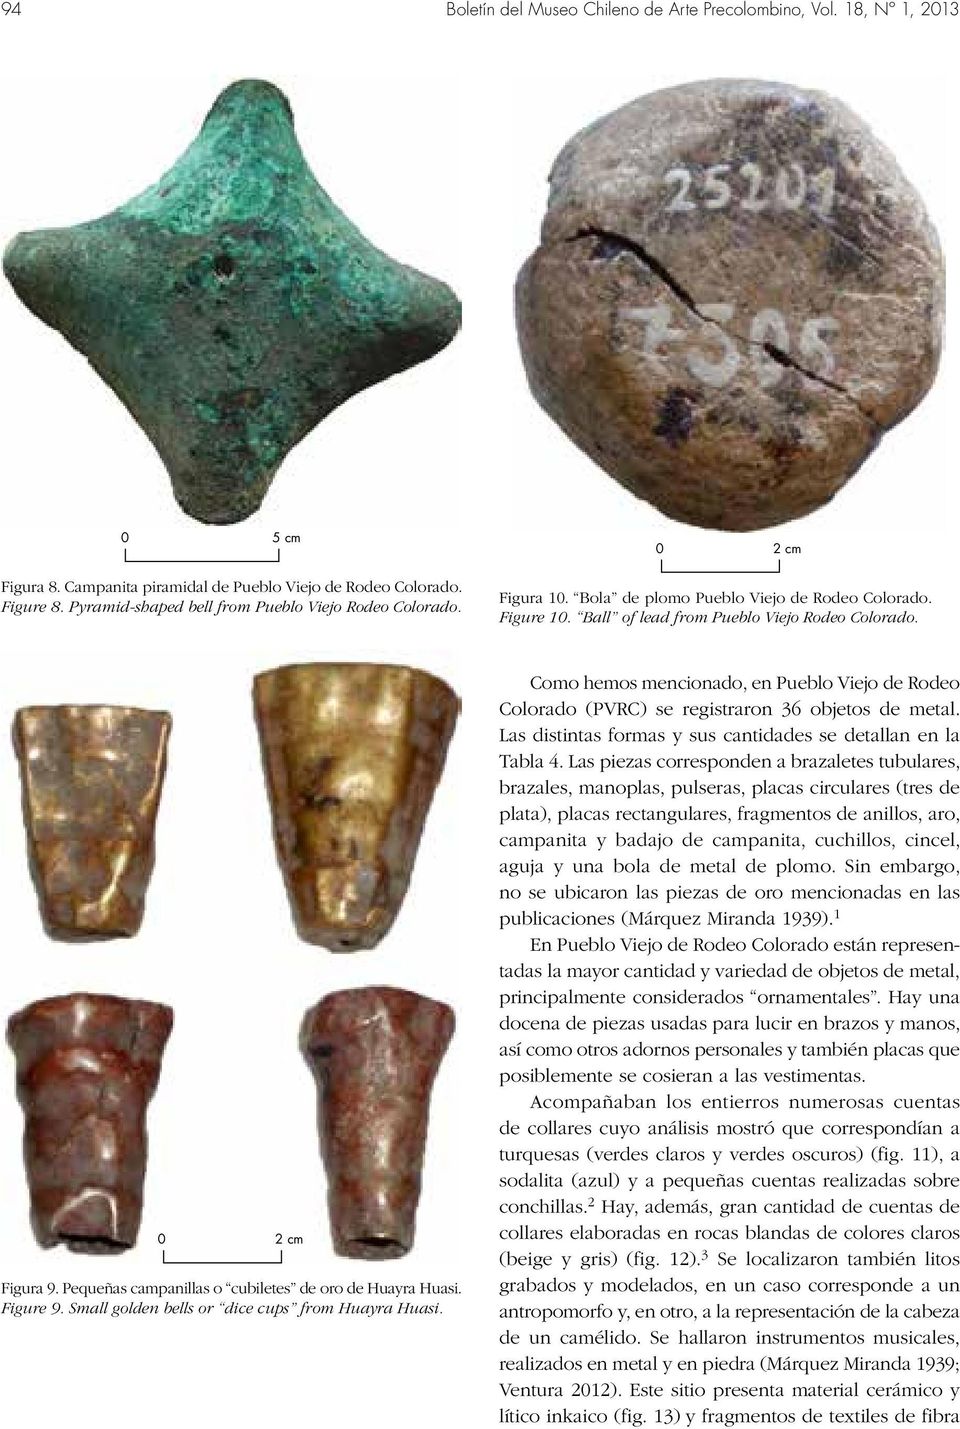 Pequeñas campanillas o cubiletes de oro de Huayra Huasi. Figure 9. Small golden bells or dice cups from Huayra Huasi.